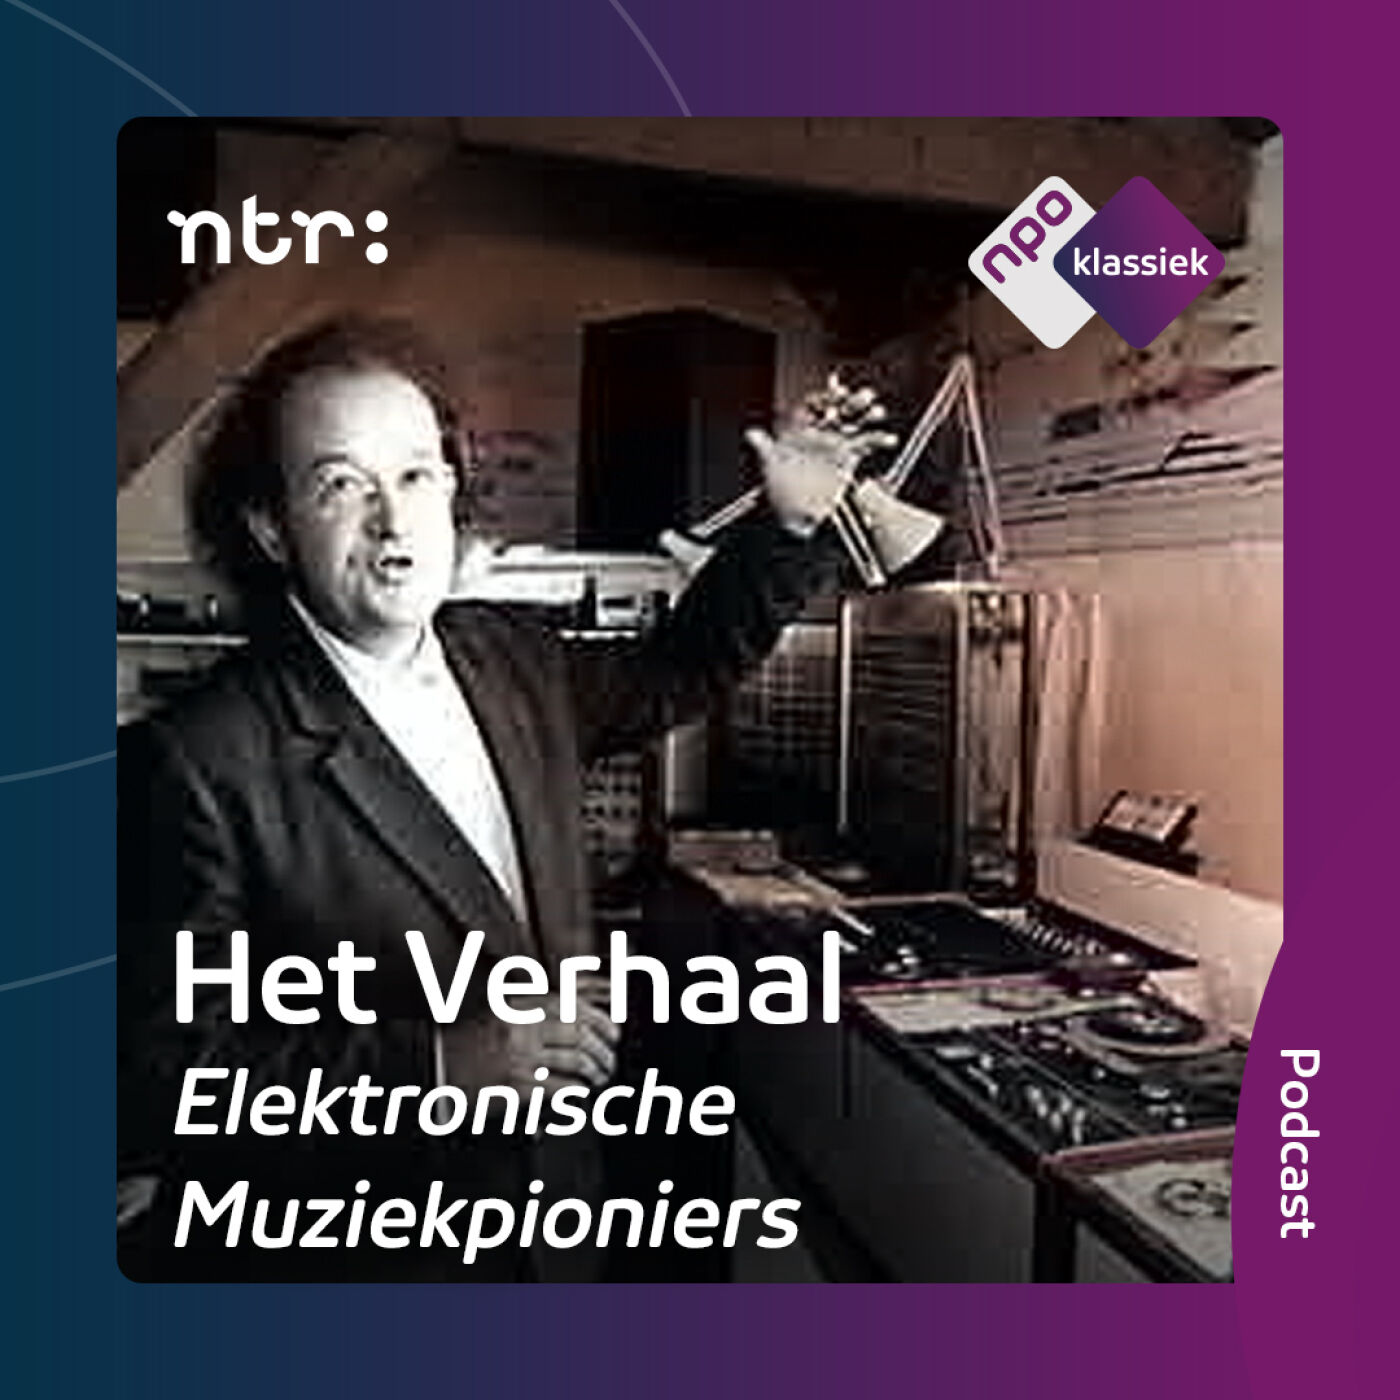 #6 - Elektronische Muziekpioniers | De ‘Kijkende oren’ van Ton Bruynèl (deel 1) (S06)